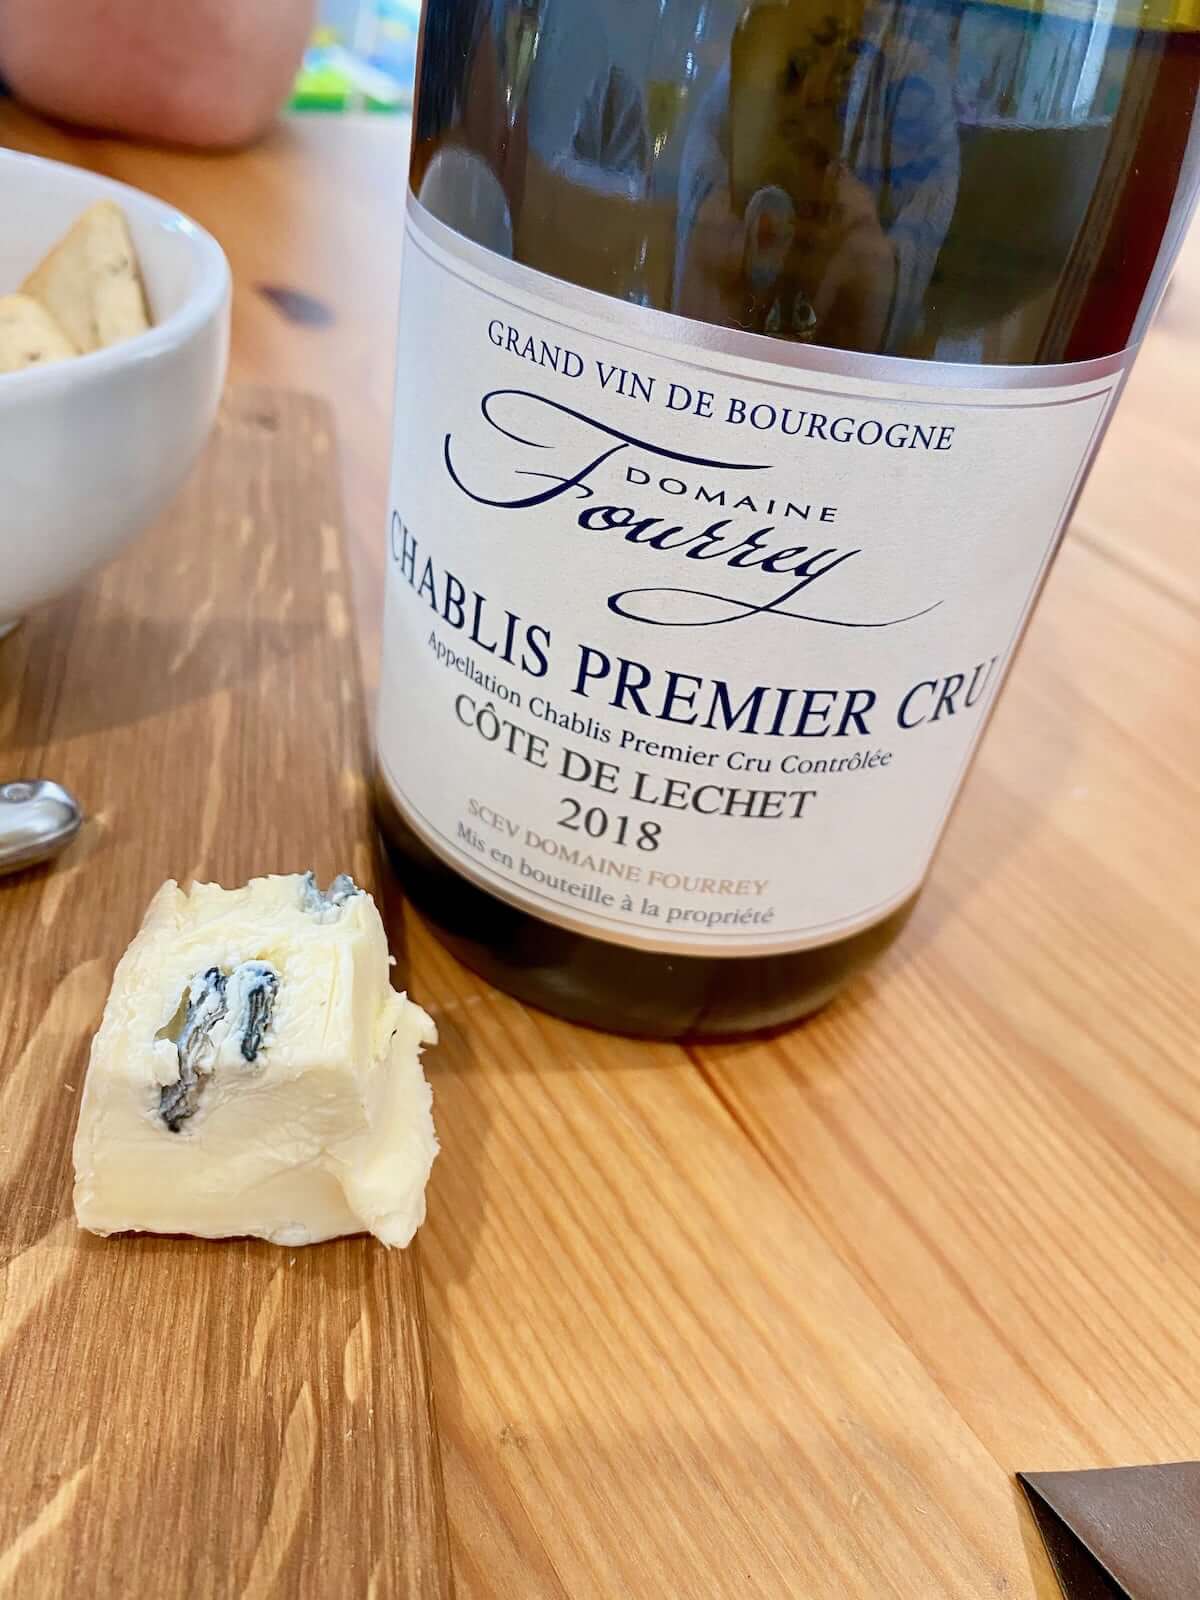 Domaine Fourrey Premier Cru Chablis 'Cote de Lechet' 2018 and blue cheese - popsy and jj